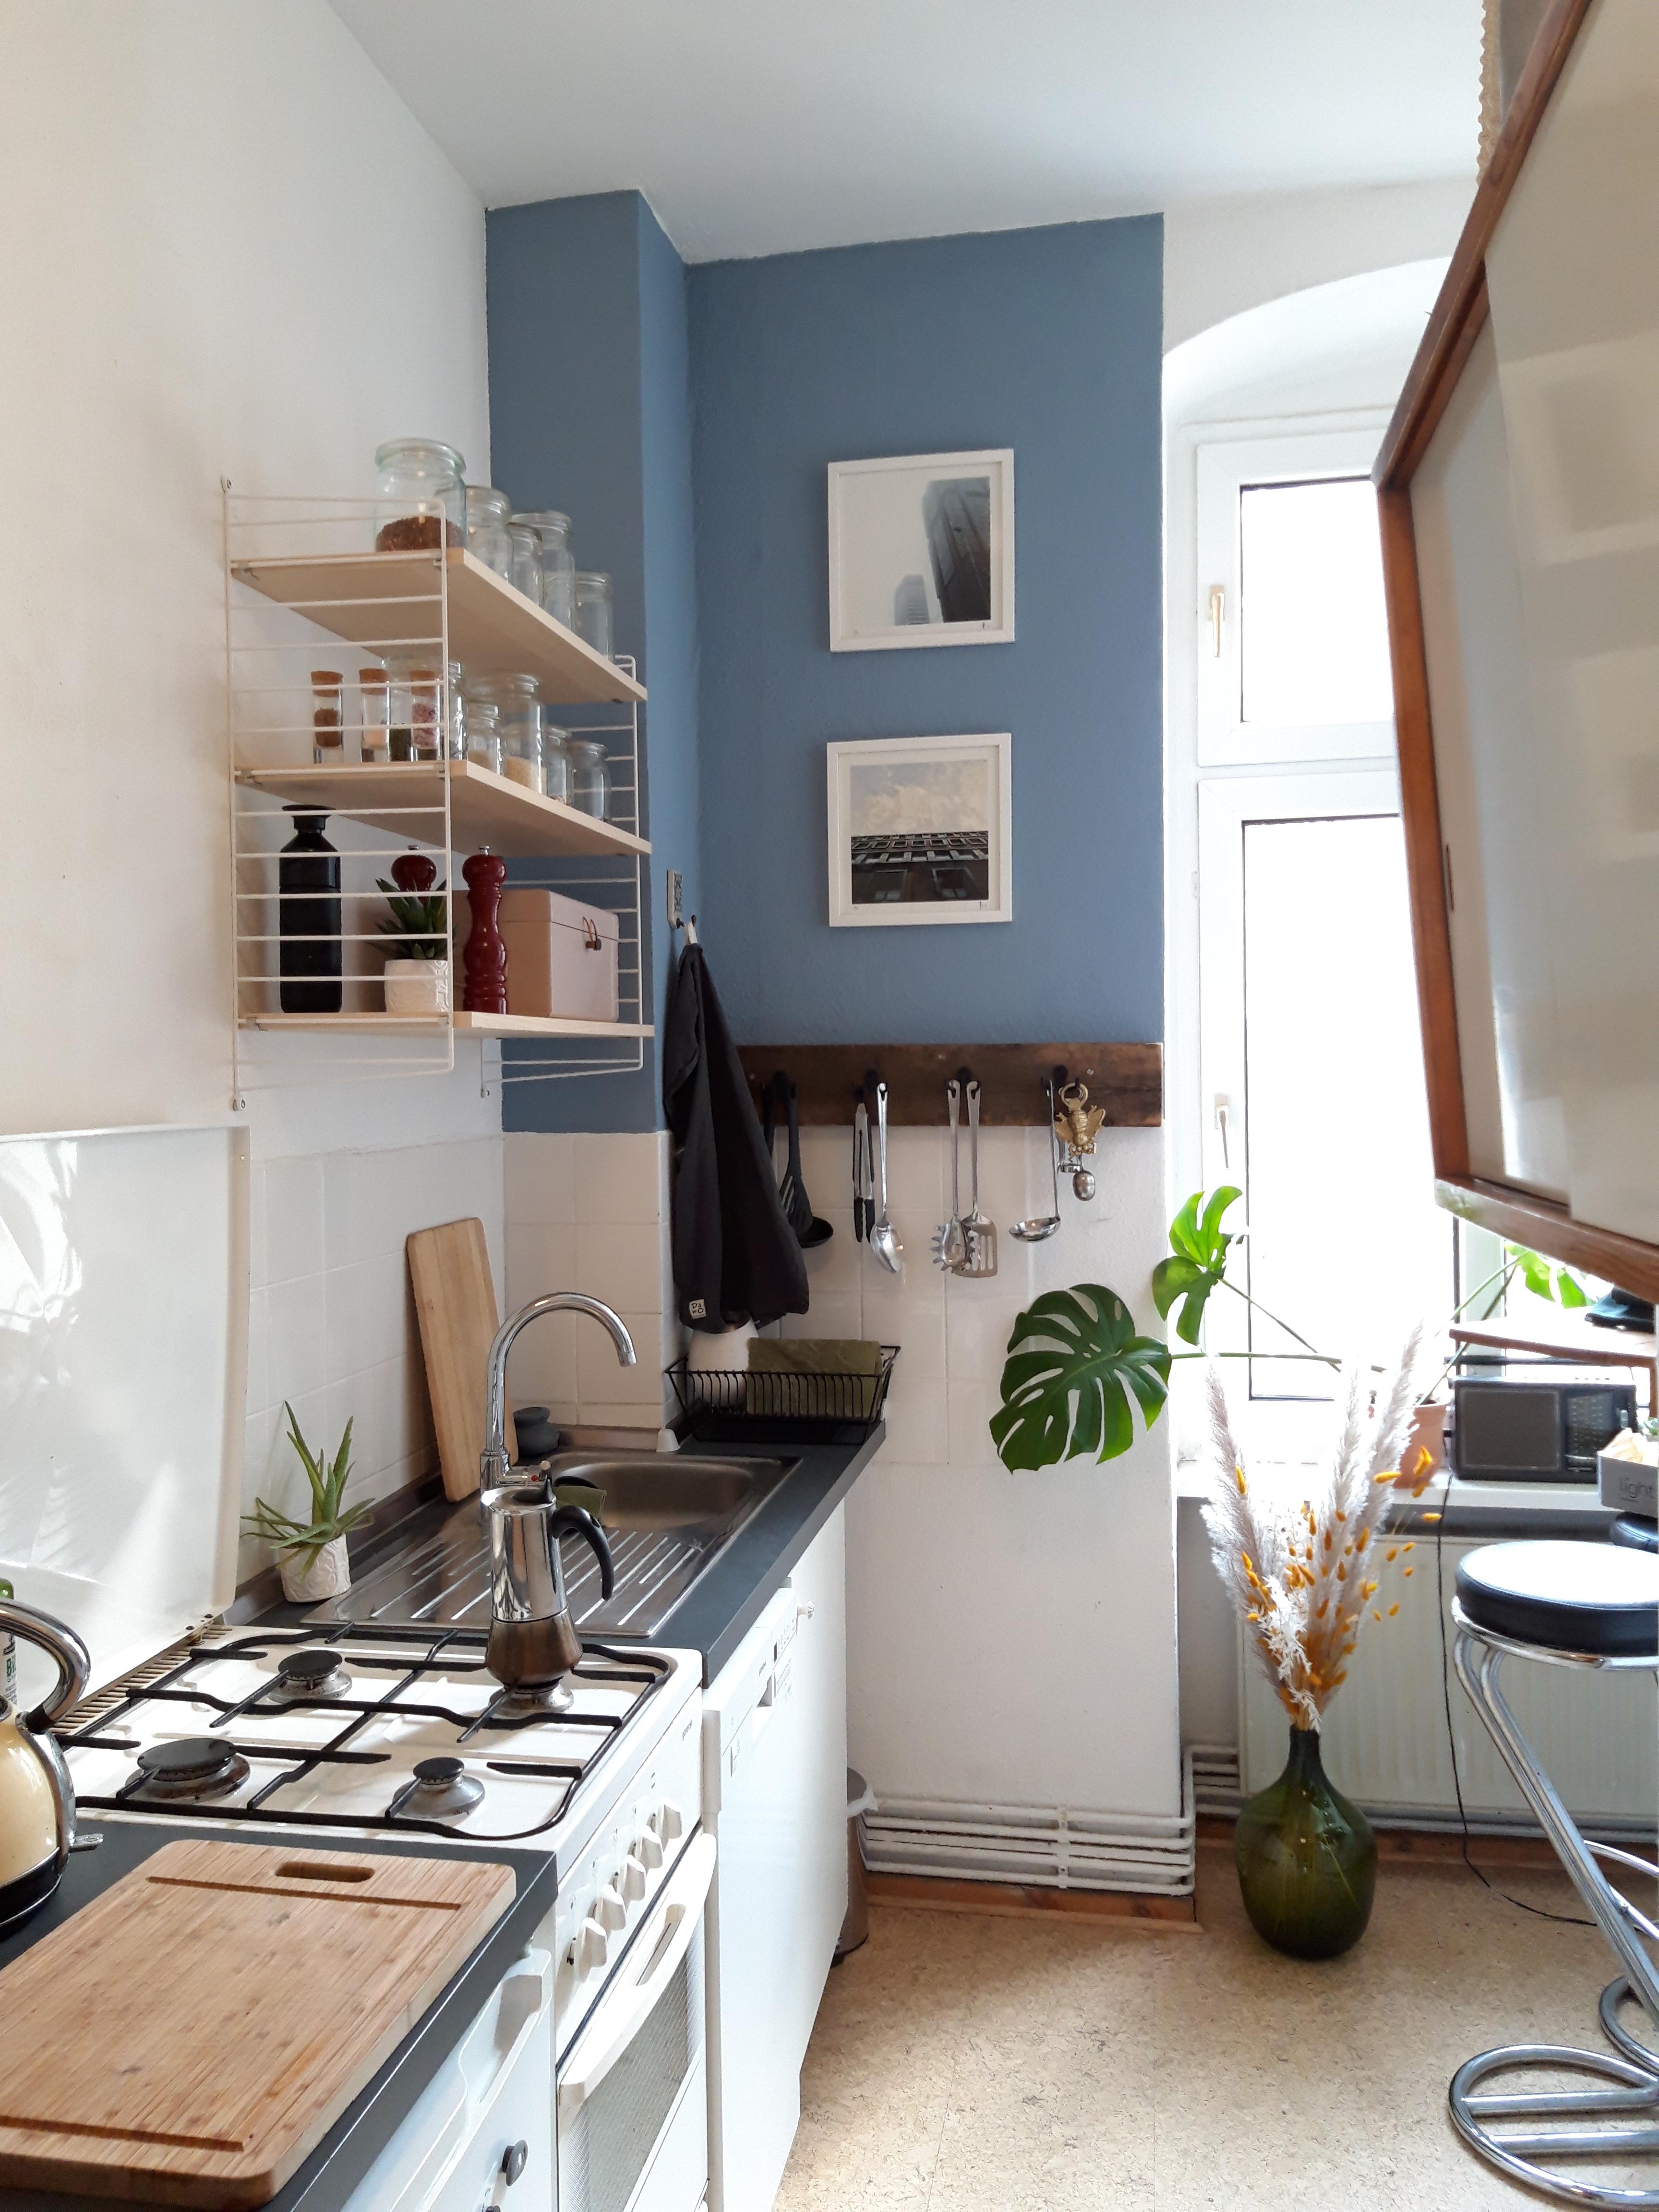 Alte Küche mit neuem Stringregal 💙
#küchenliebe #livingchallenge
